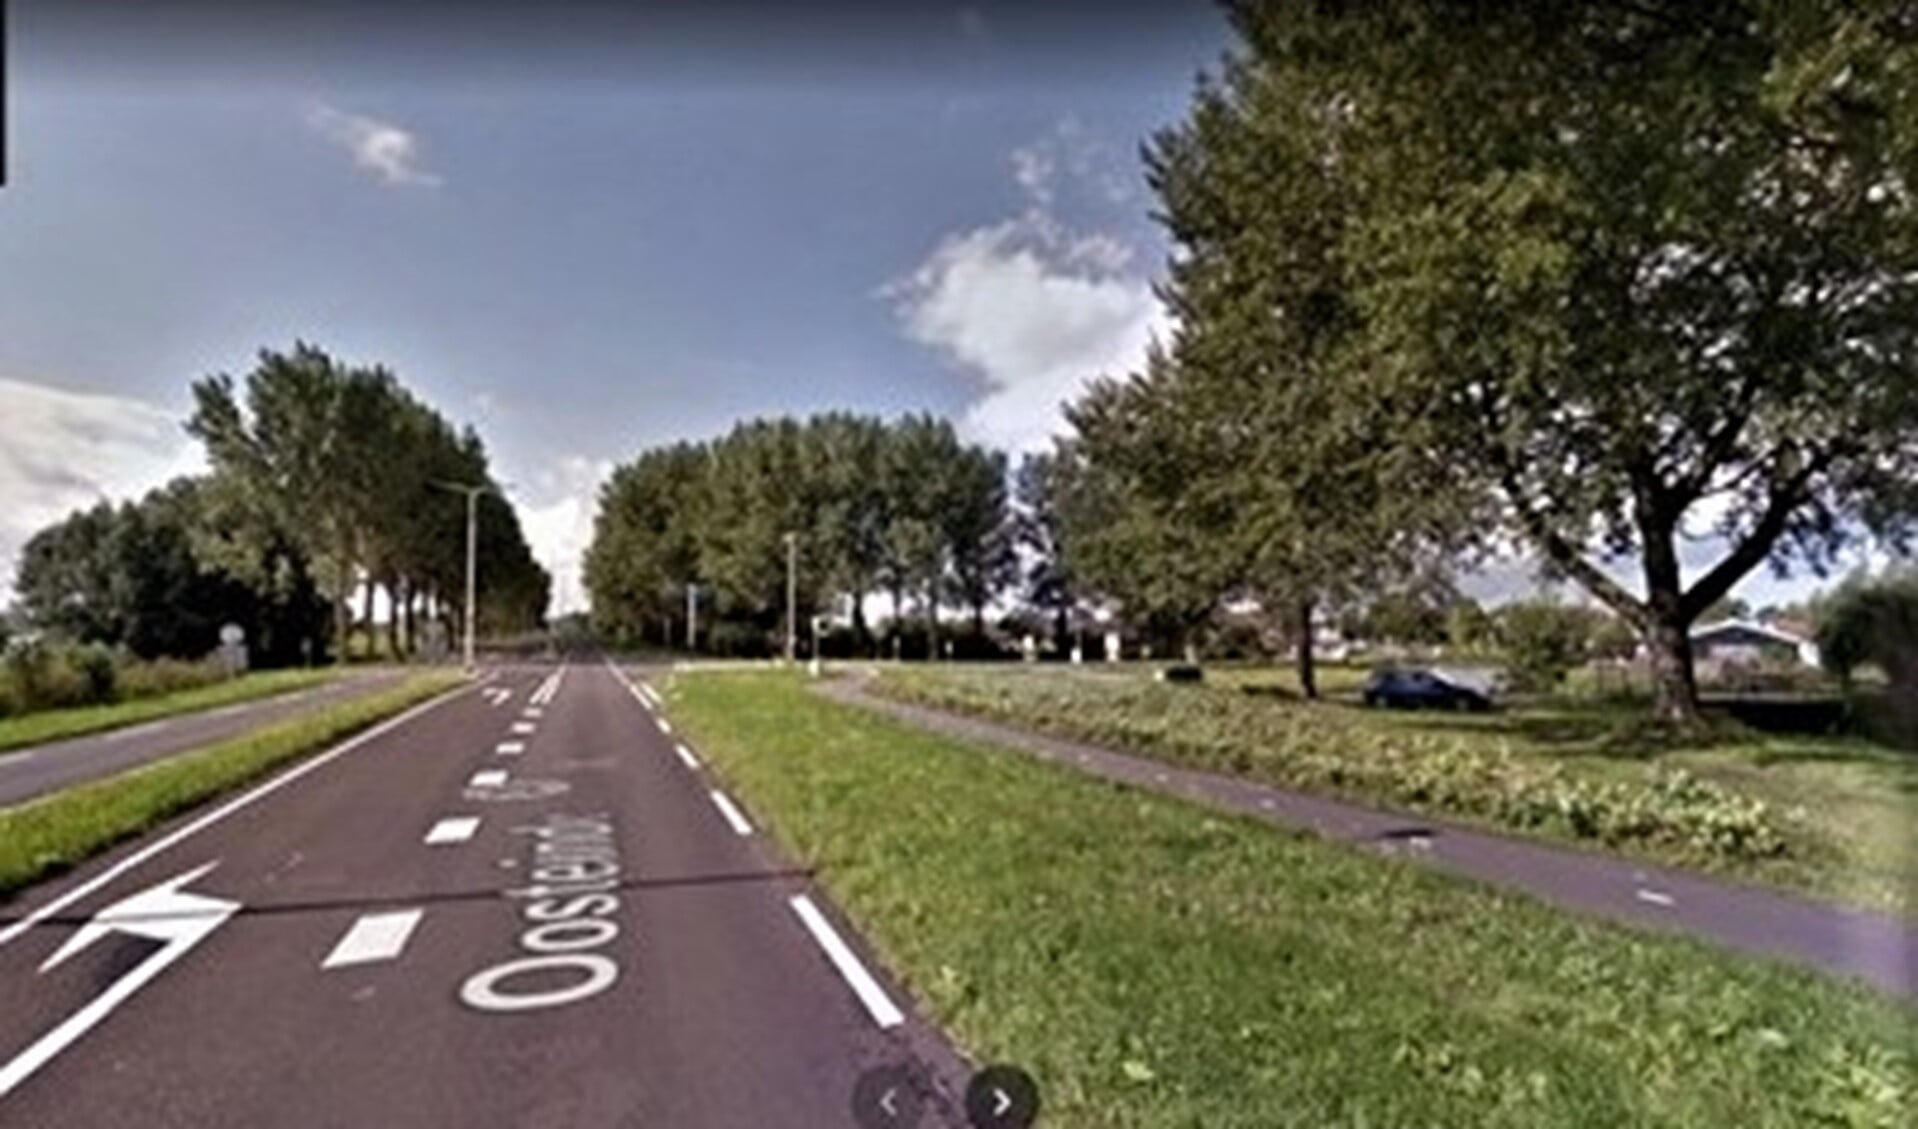 De N206 (ter plekke Oosteinde geheten) in Stompwijk waar een aansluiting op de Veenpoldersweg moet komen (foto: Google Streetview).